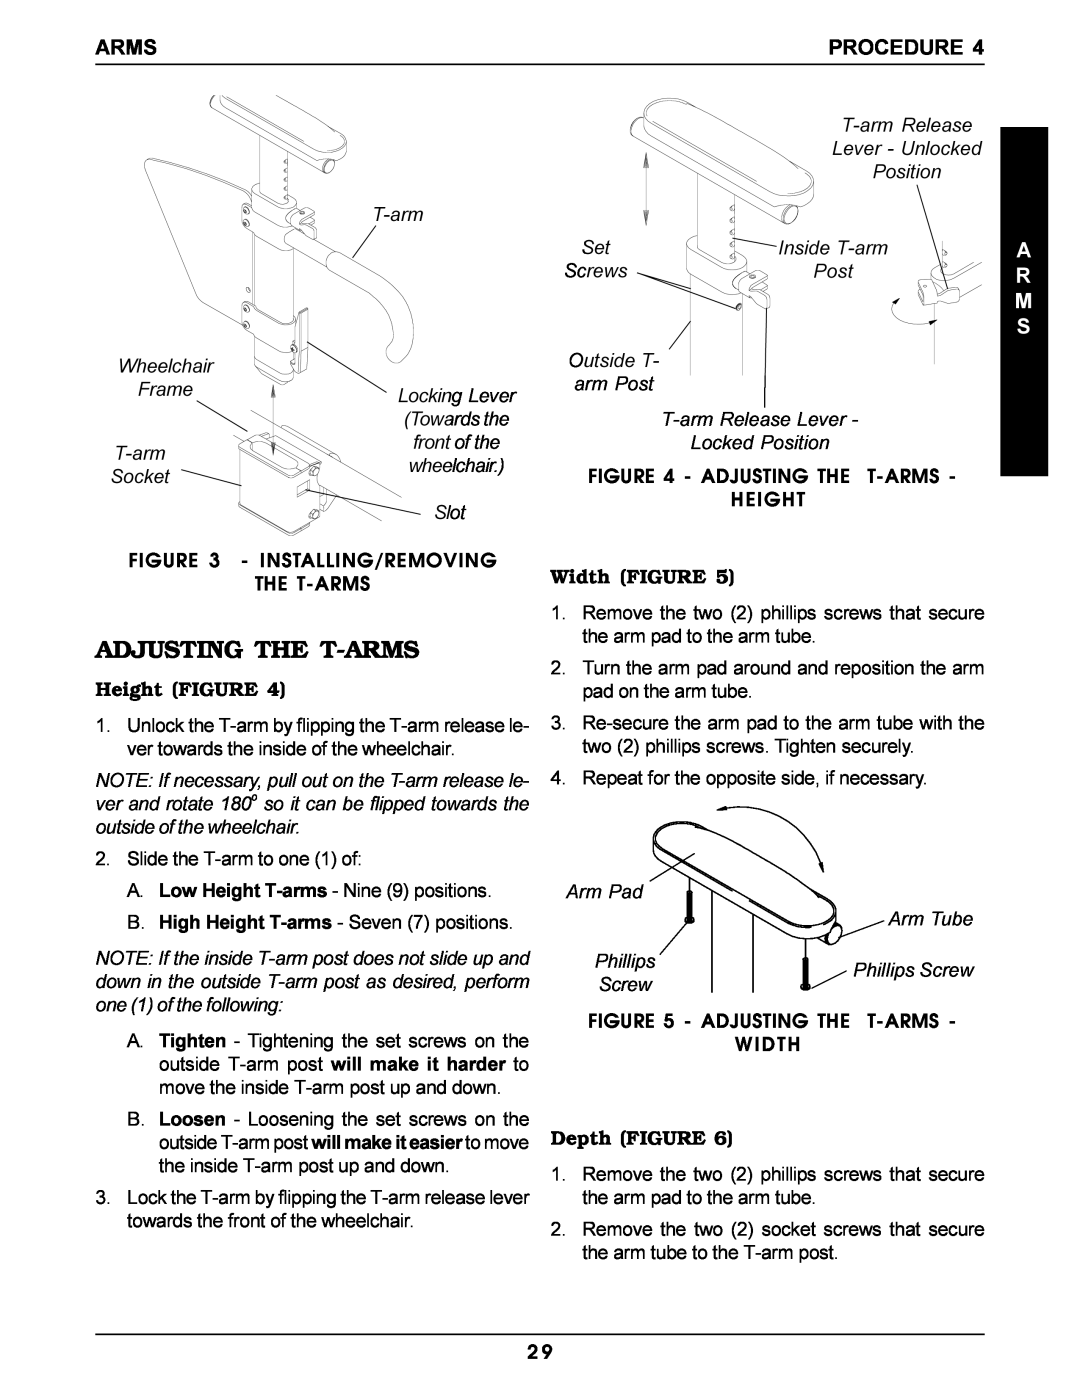 Invacare Pro Series manual Adjusting The T-Arms, Width FIGURE, Height FIGURE, Depth FIGURE, Procedure, A R M S 